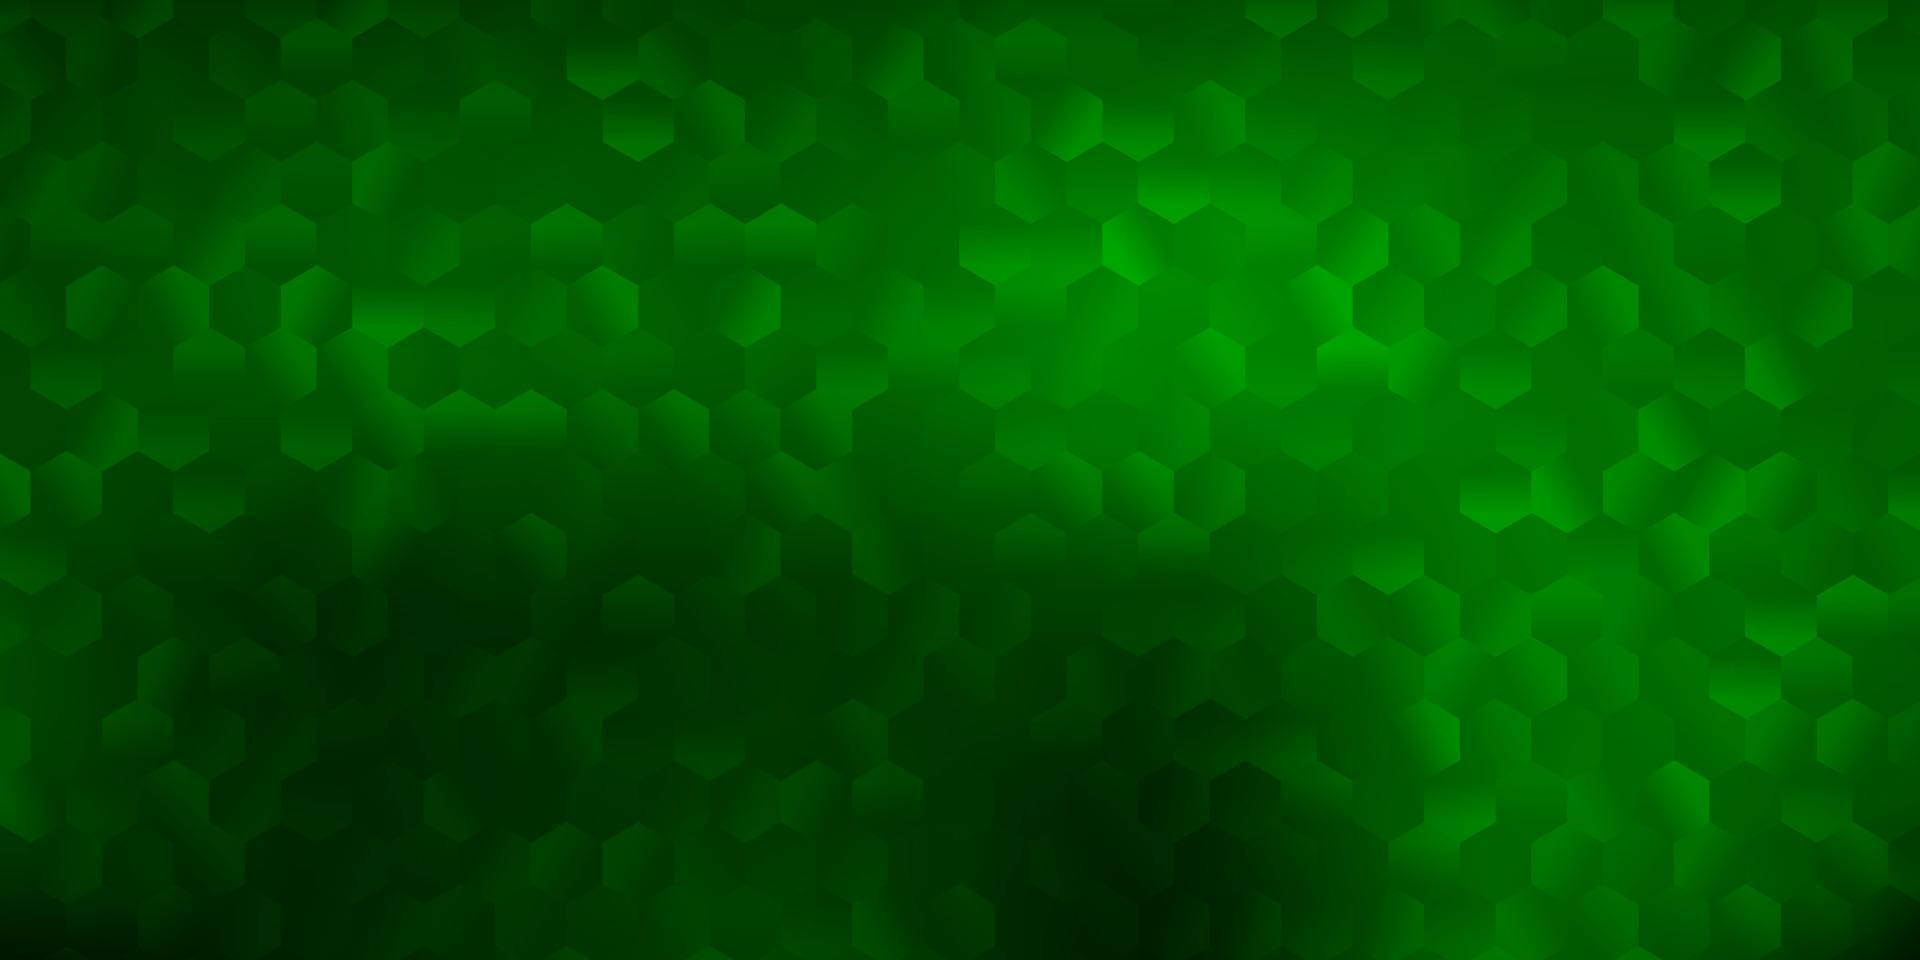 mörkgrön vektorbakgrund med sexkantiga former. vektor